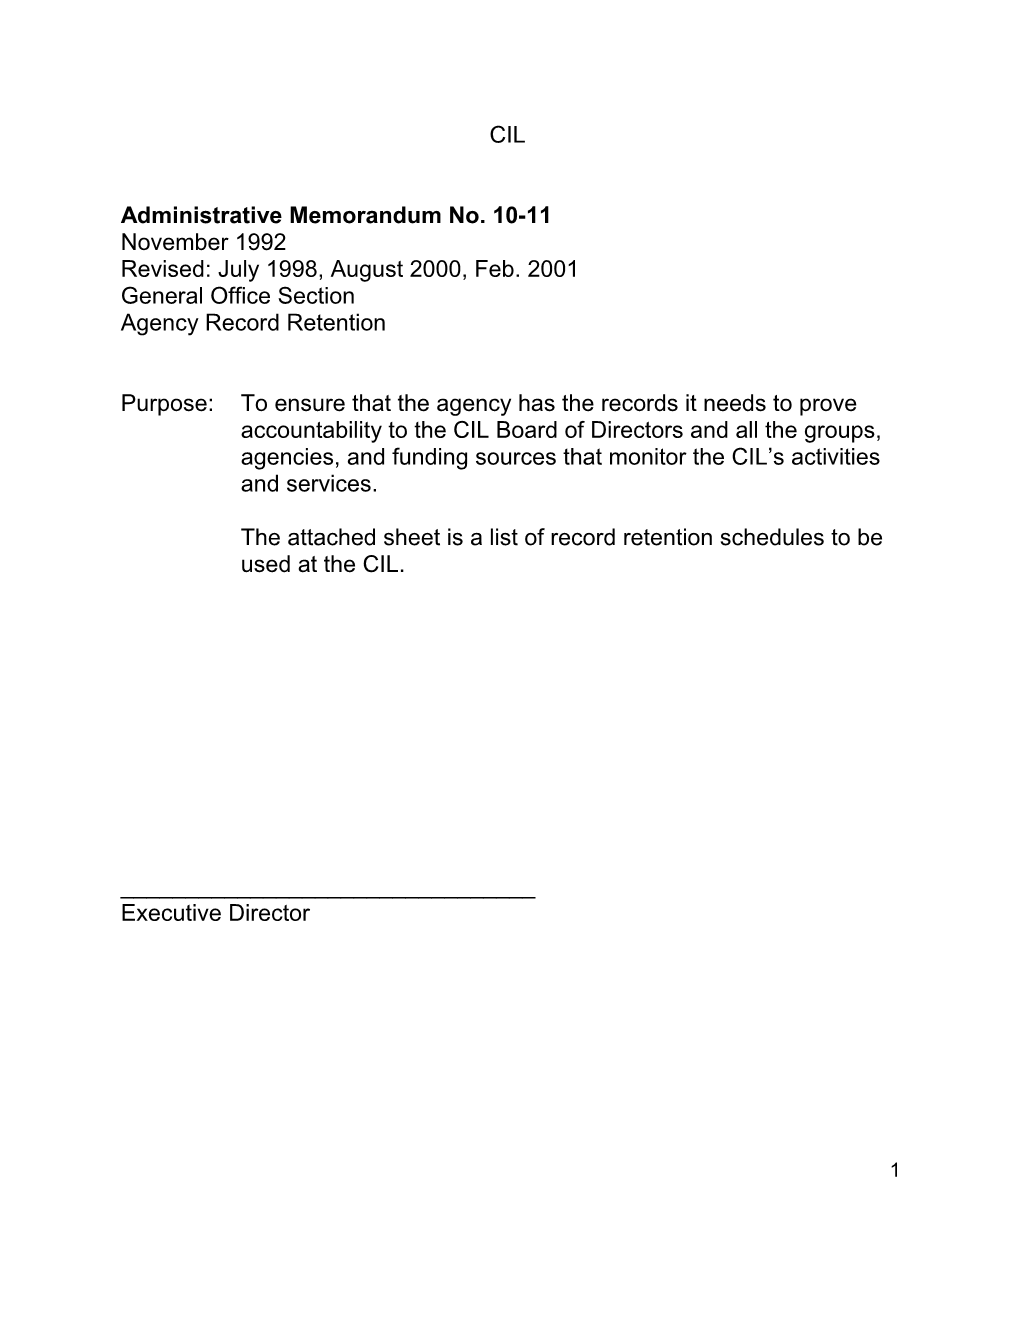 Administrative Memorandum No. 10-11